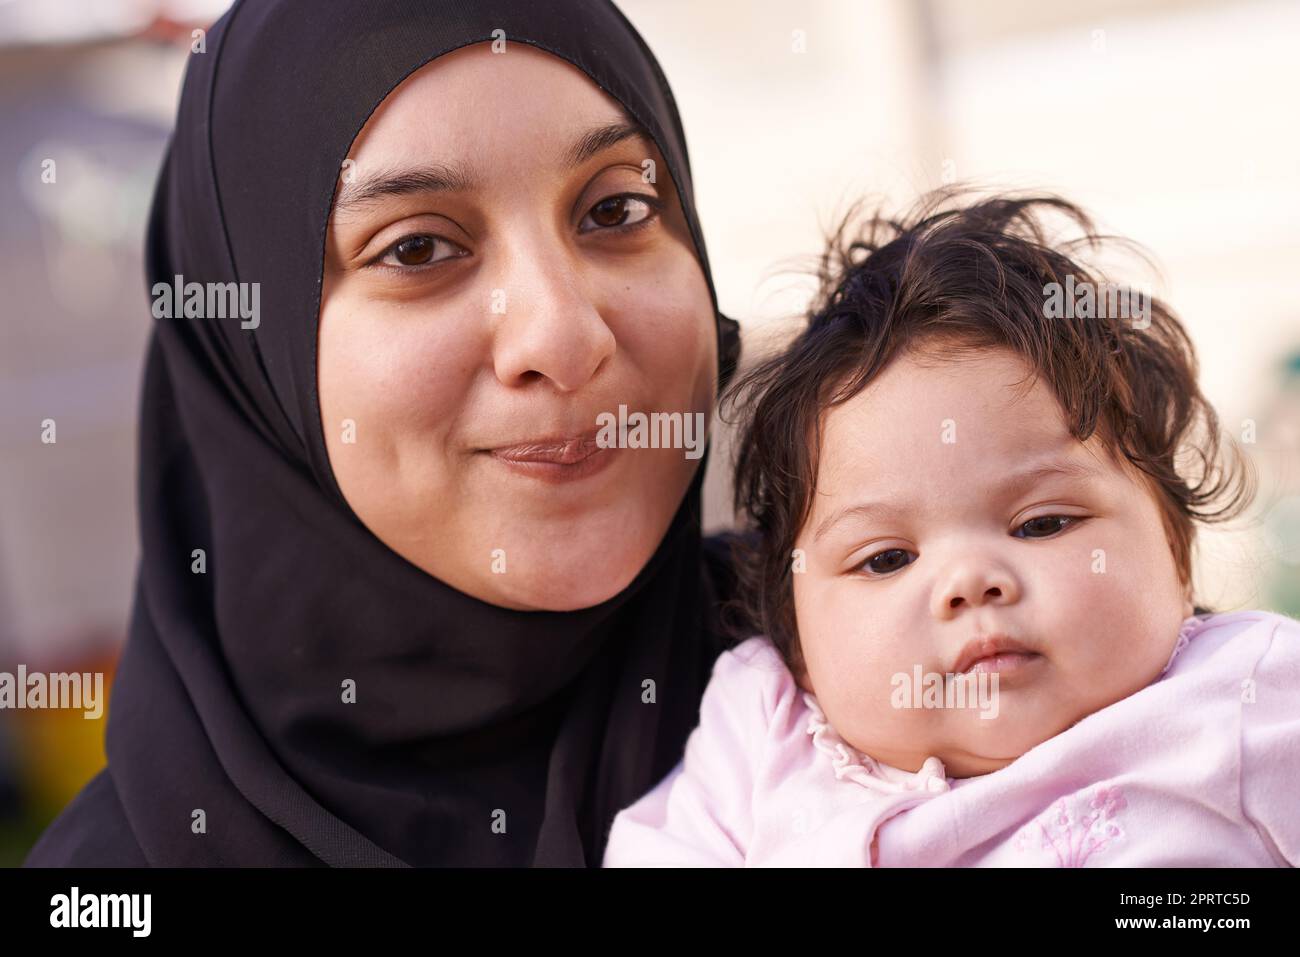 Sie nimmt ihrem Vater nach. Eine muslimische Mutter und ihr kleines Mädchen. Stockfoto